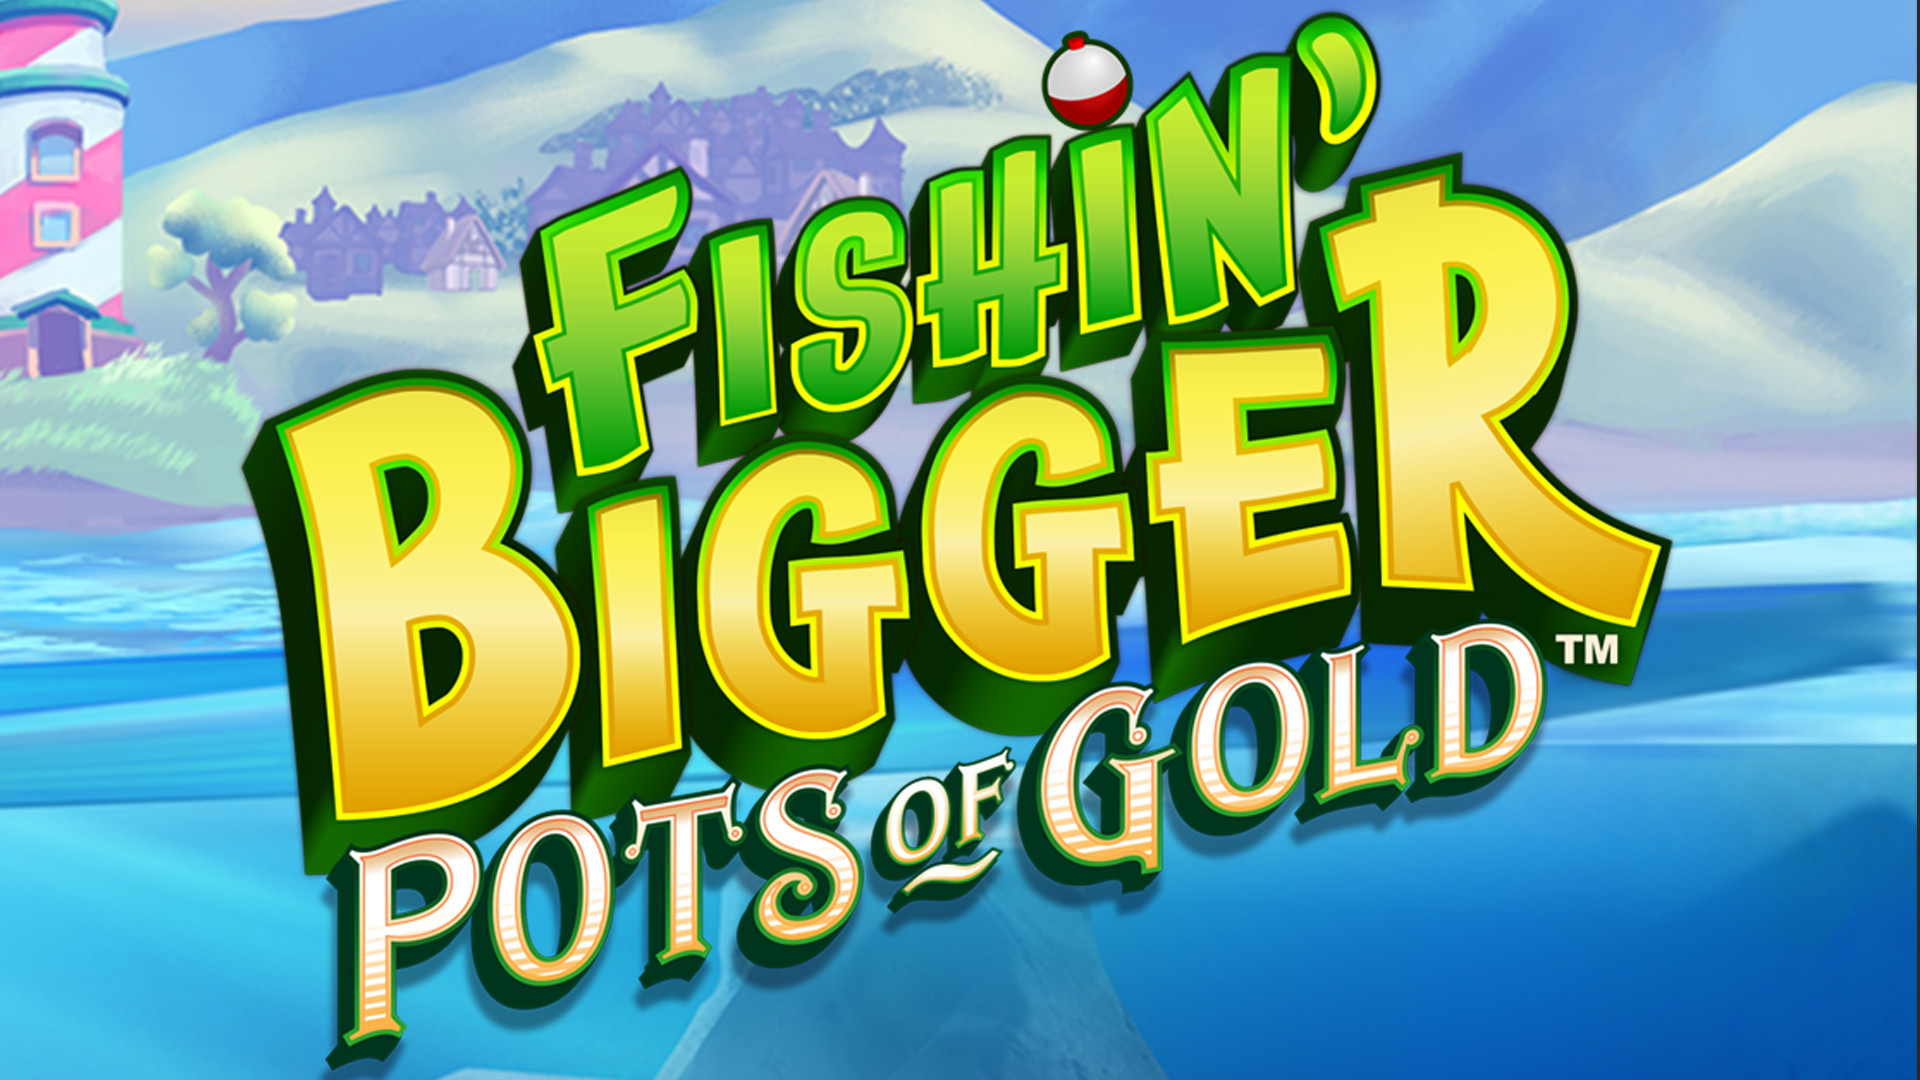 Fishin' BIGGER Pots Of Gold